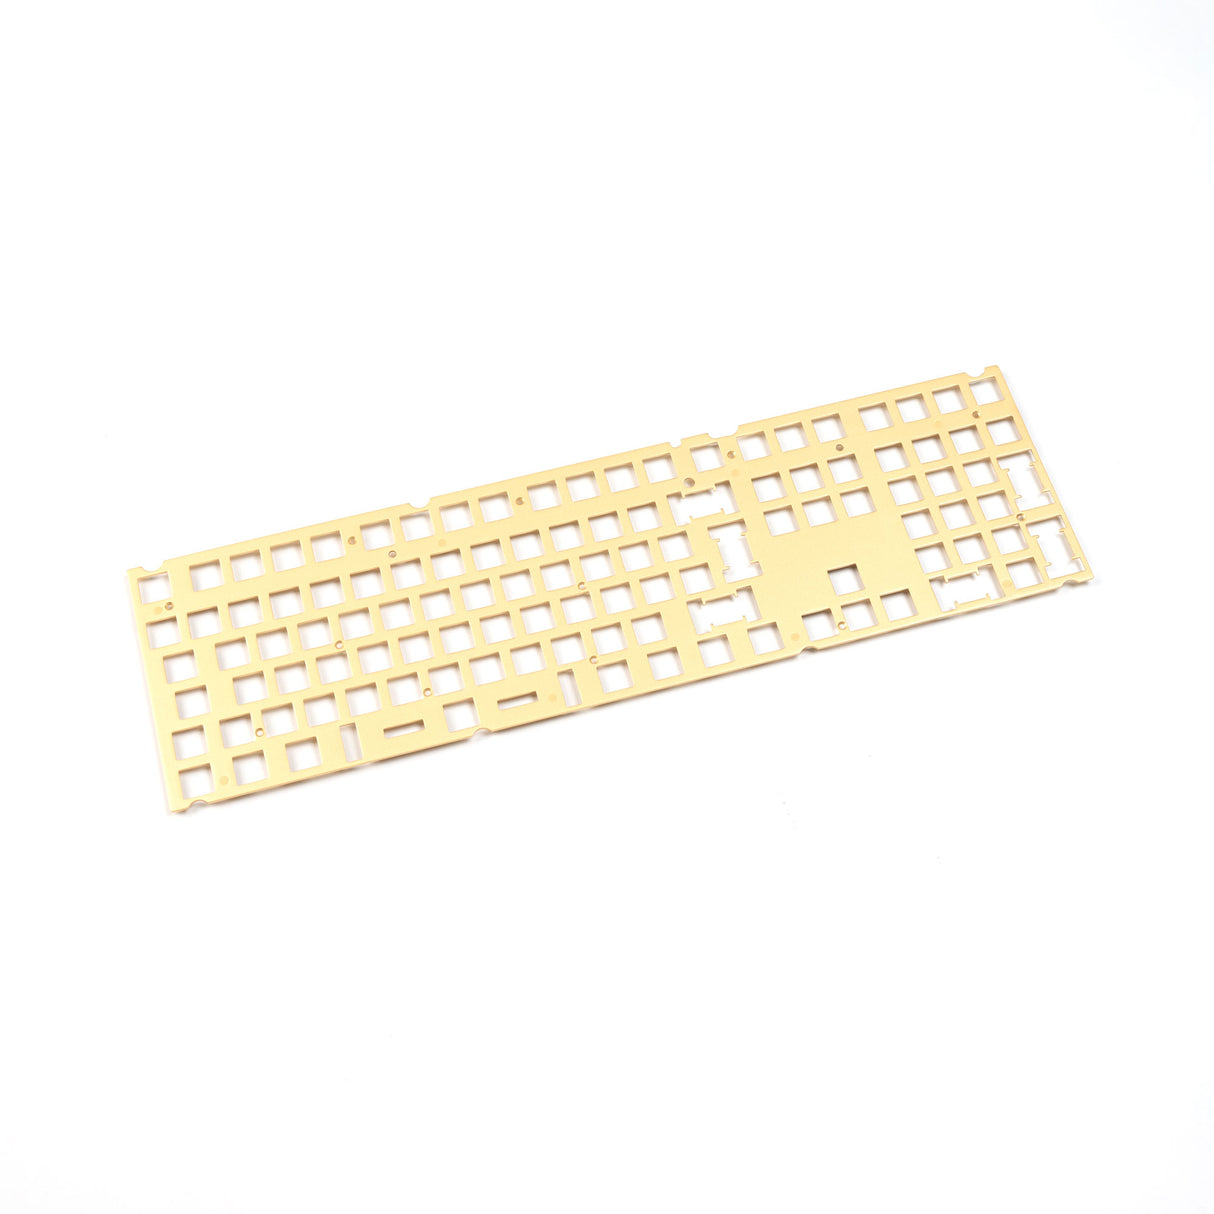 Keychron V6 Keyboard ISO Layout Knob Brass Plate